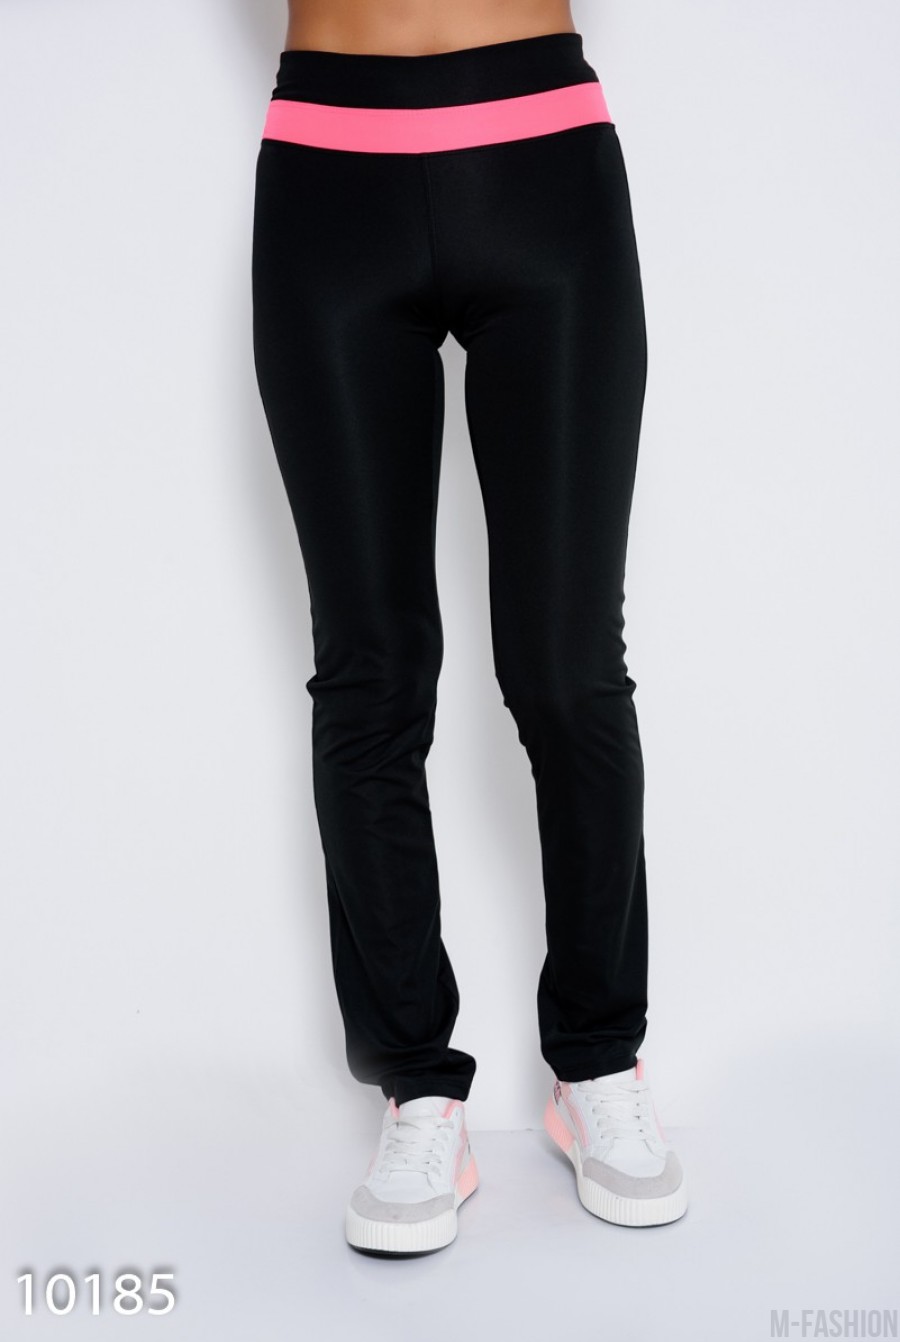 Черные эластичные спортивные штаны с розовой вставкой на поясе - Фото 1